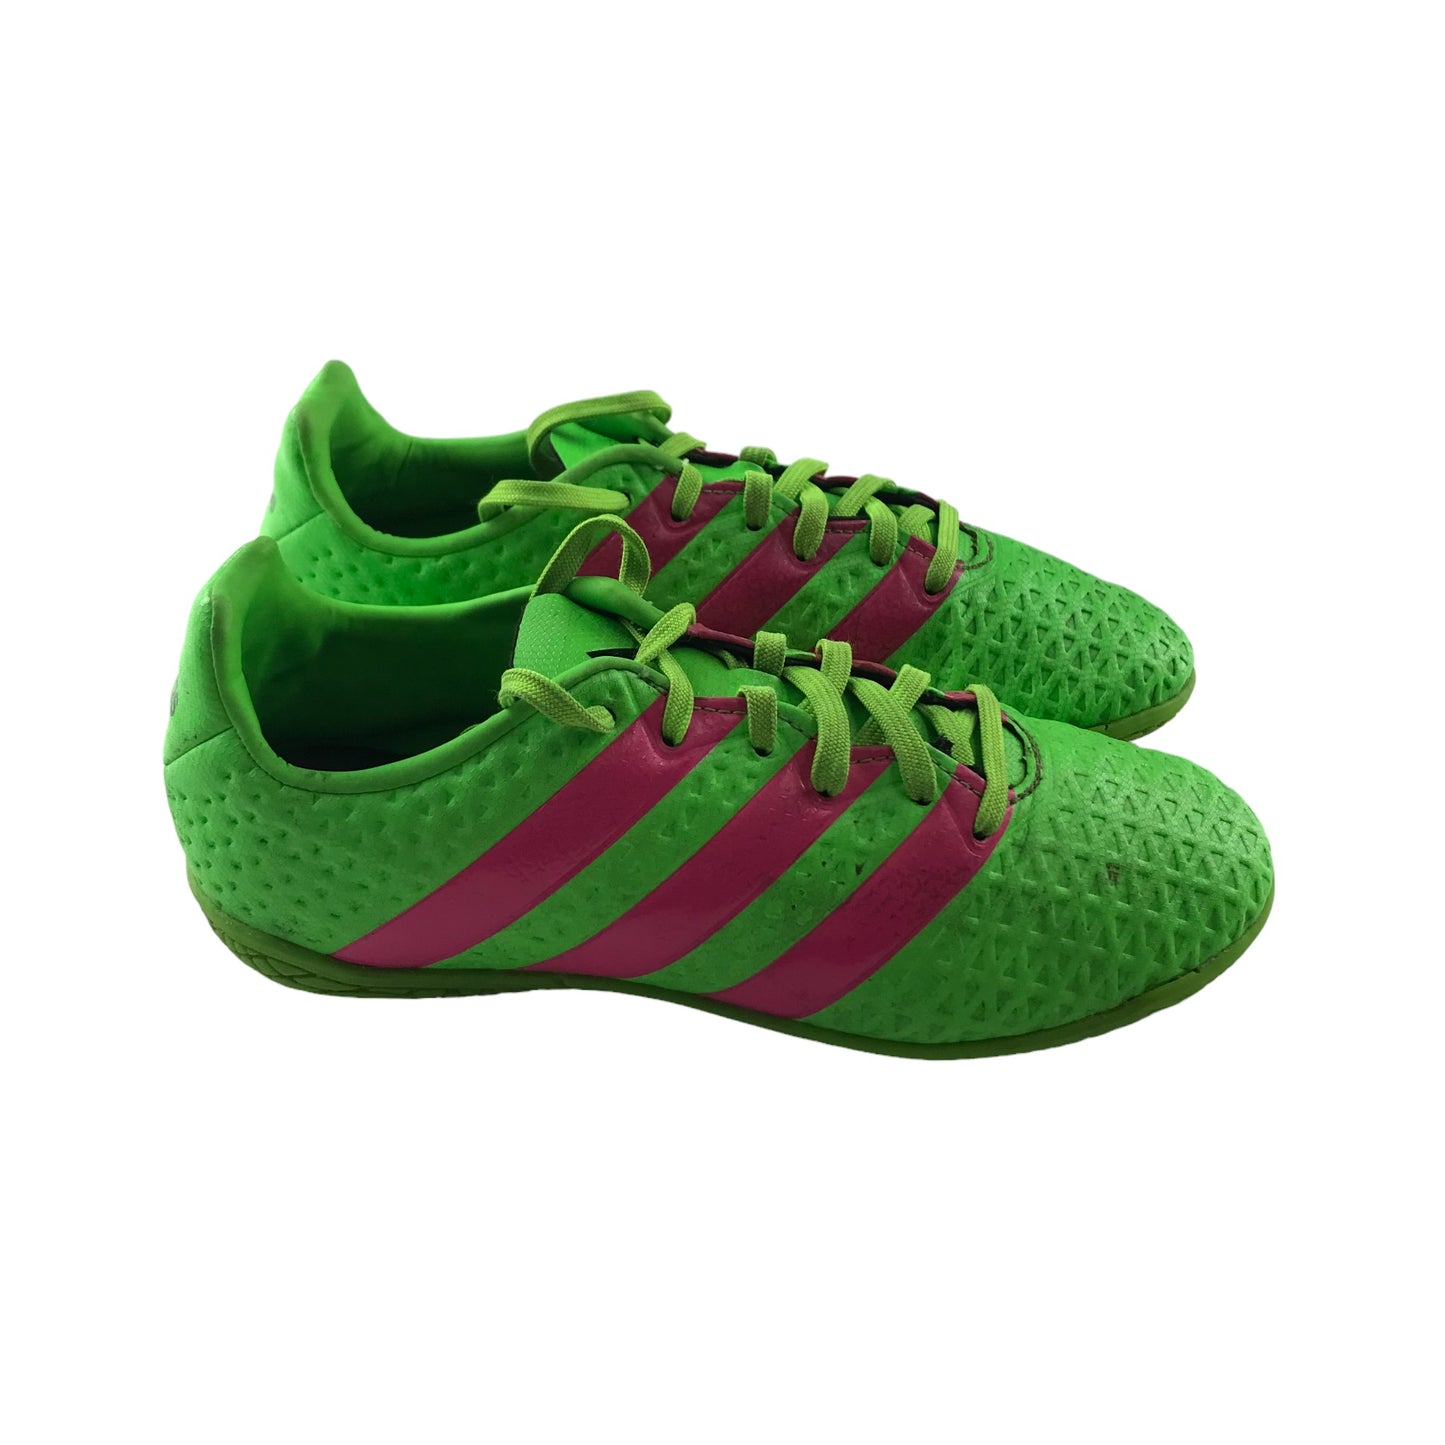 Adidas Football Boots Shoe Size 2 Neon Green Indoor Pink Adidas Logo